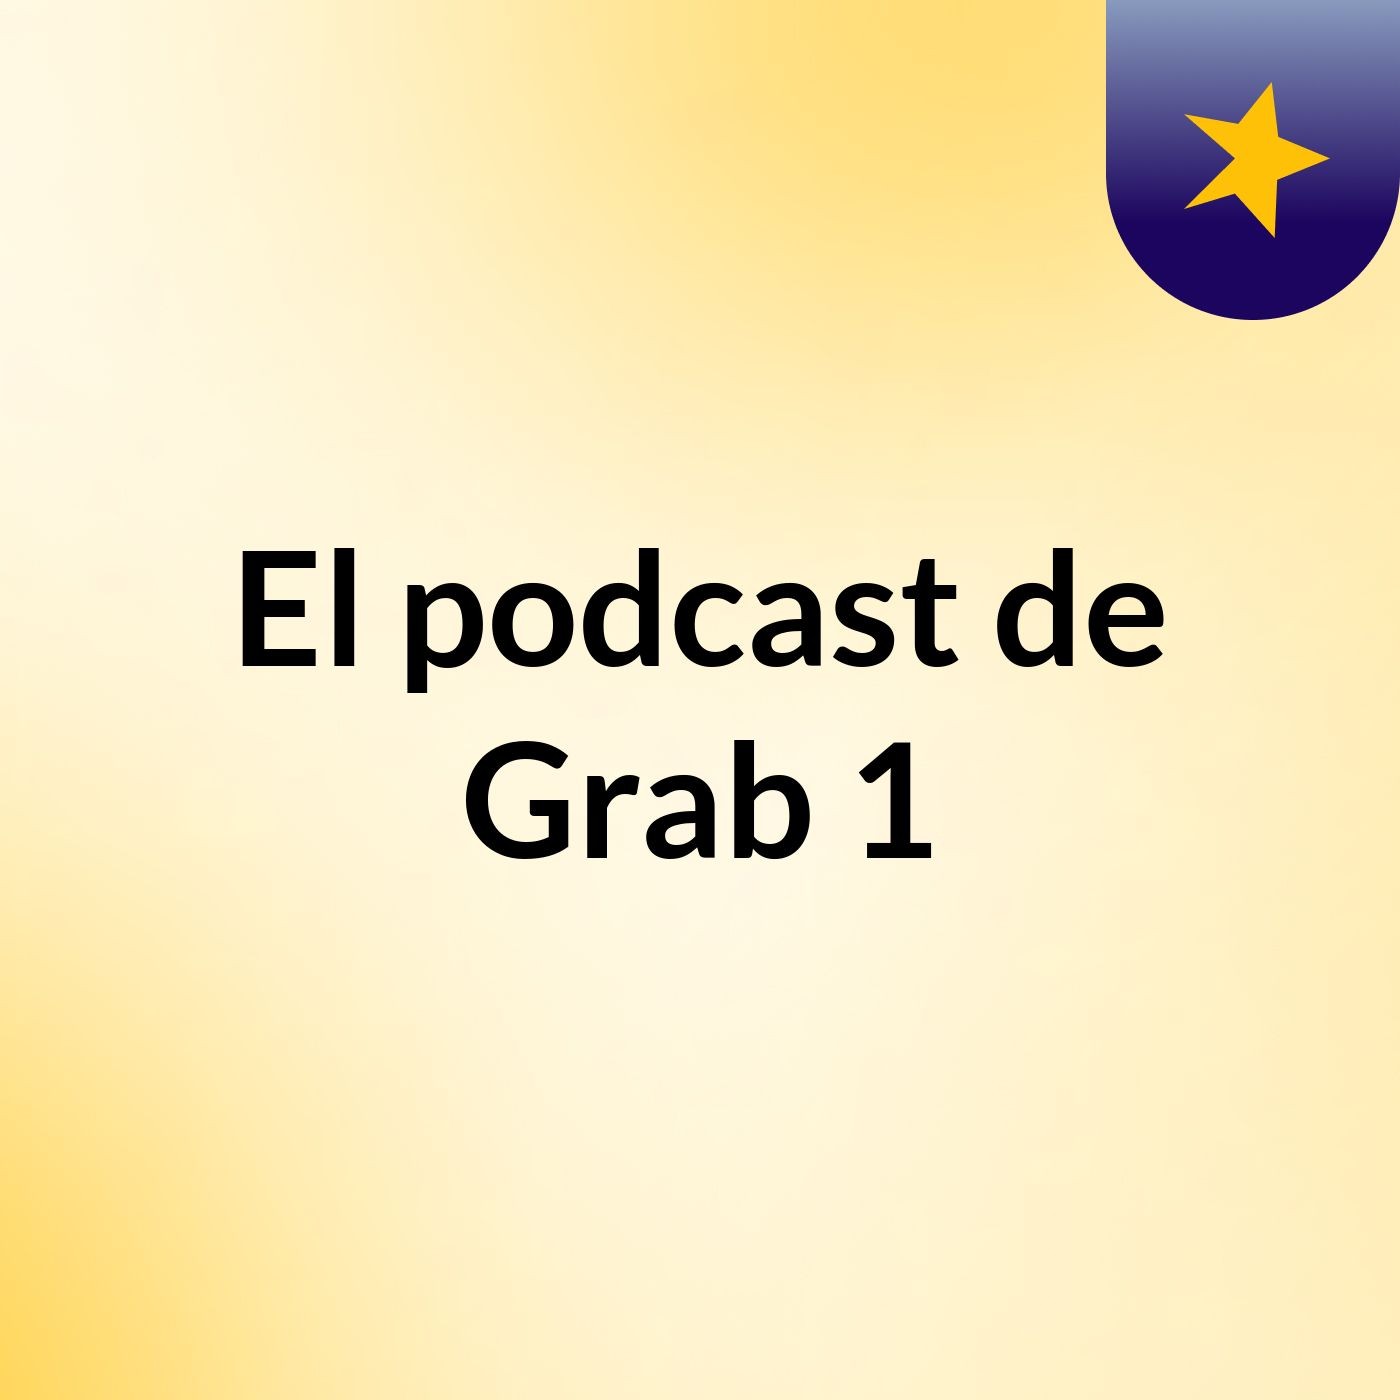 Episodio 2 - El podcast de Grab 1